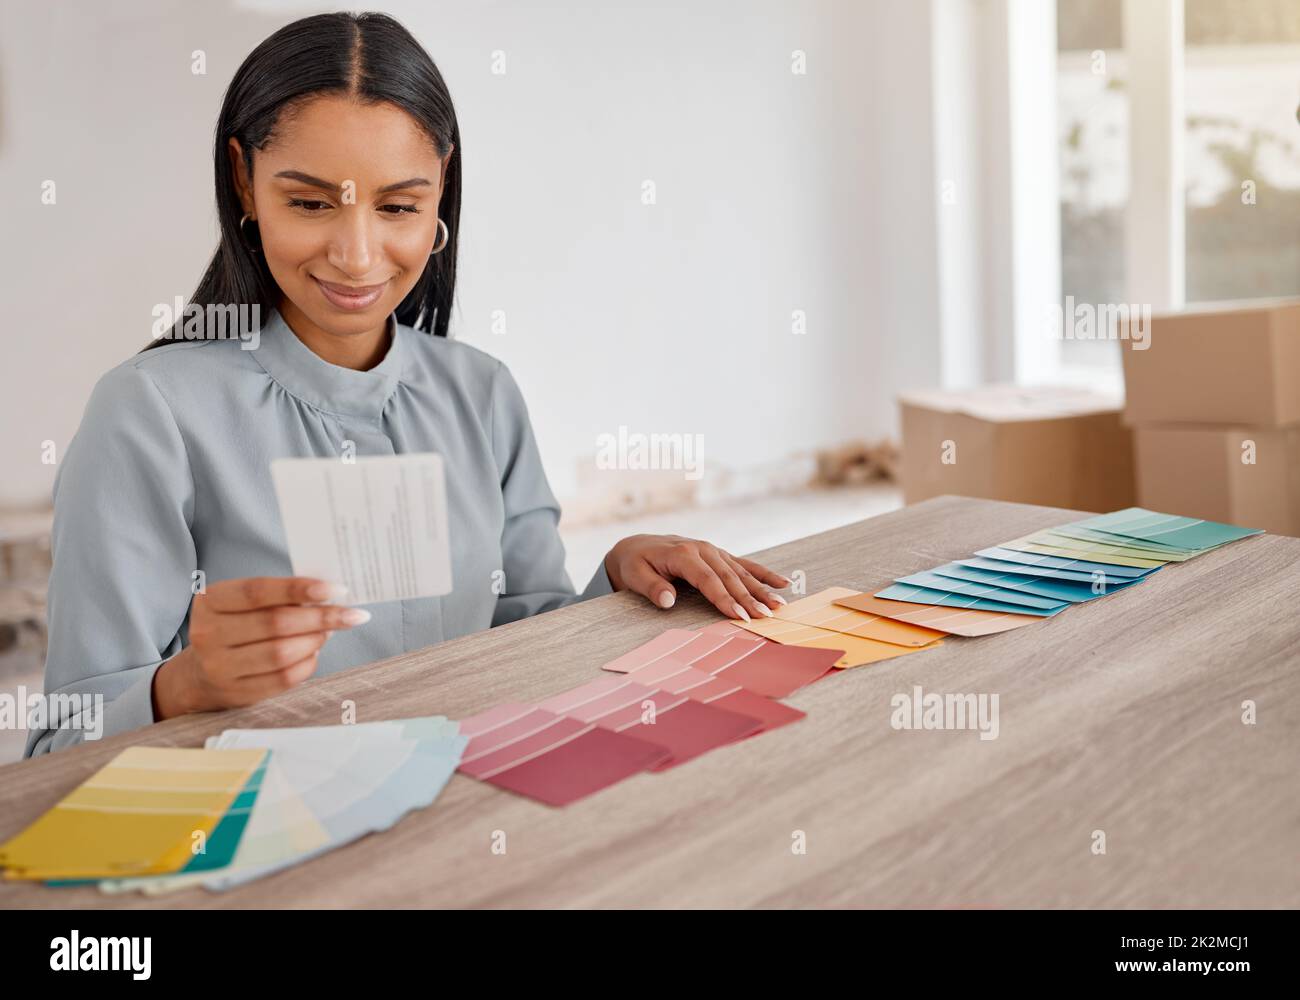 Das sieht aus wie der Gewinner. Aufnahme einer jungen Frau, die bei der Renovierung ihres Hauses verschiedene Farbfelder ansah. Stockfoto